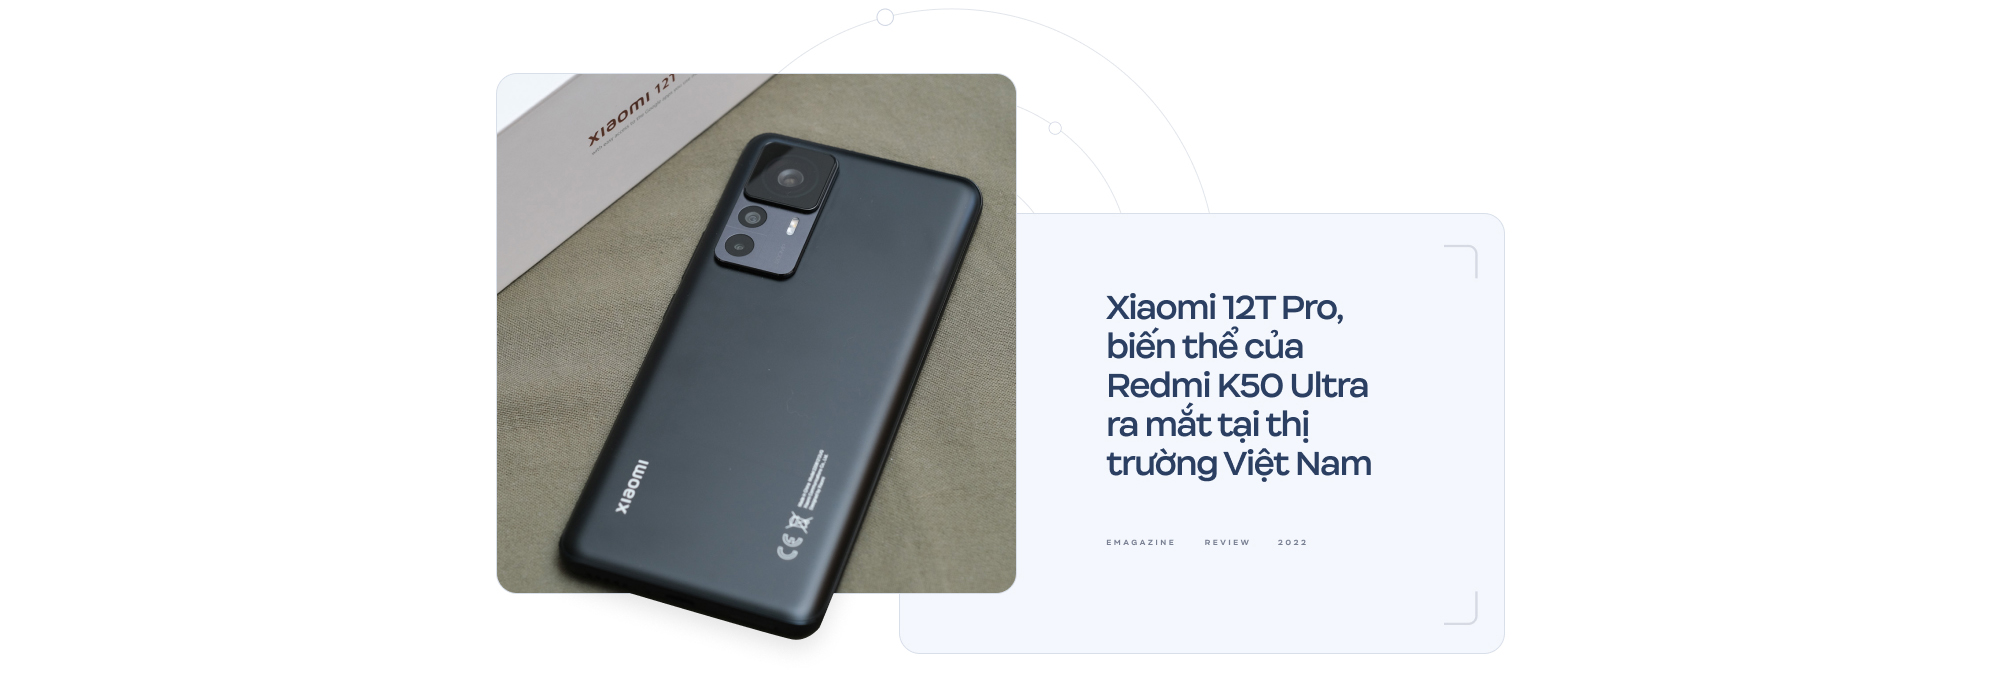 Đánh giá Xiaomi 12T Pro: Phần cứng “đỉnh” liệu có còn là thứ người dùng cần? - Ảnh 1.